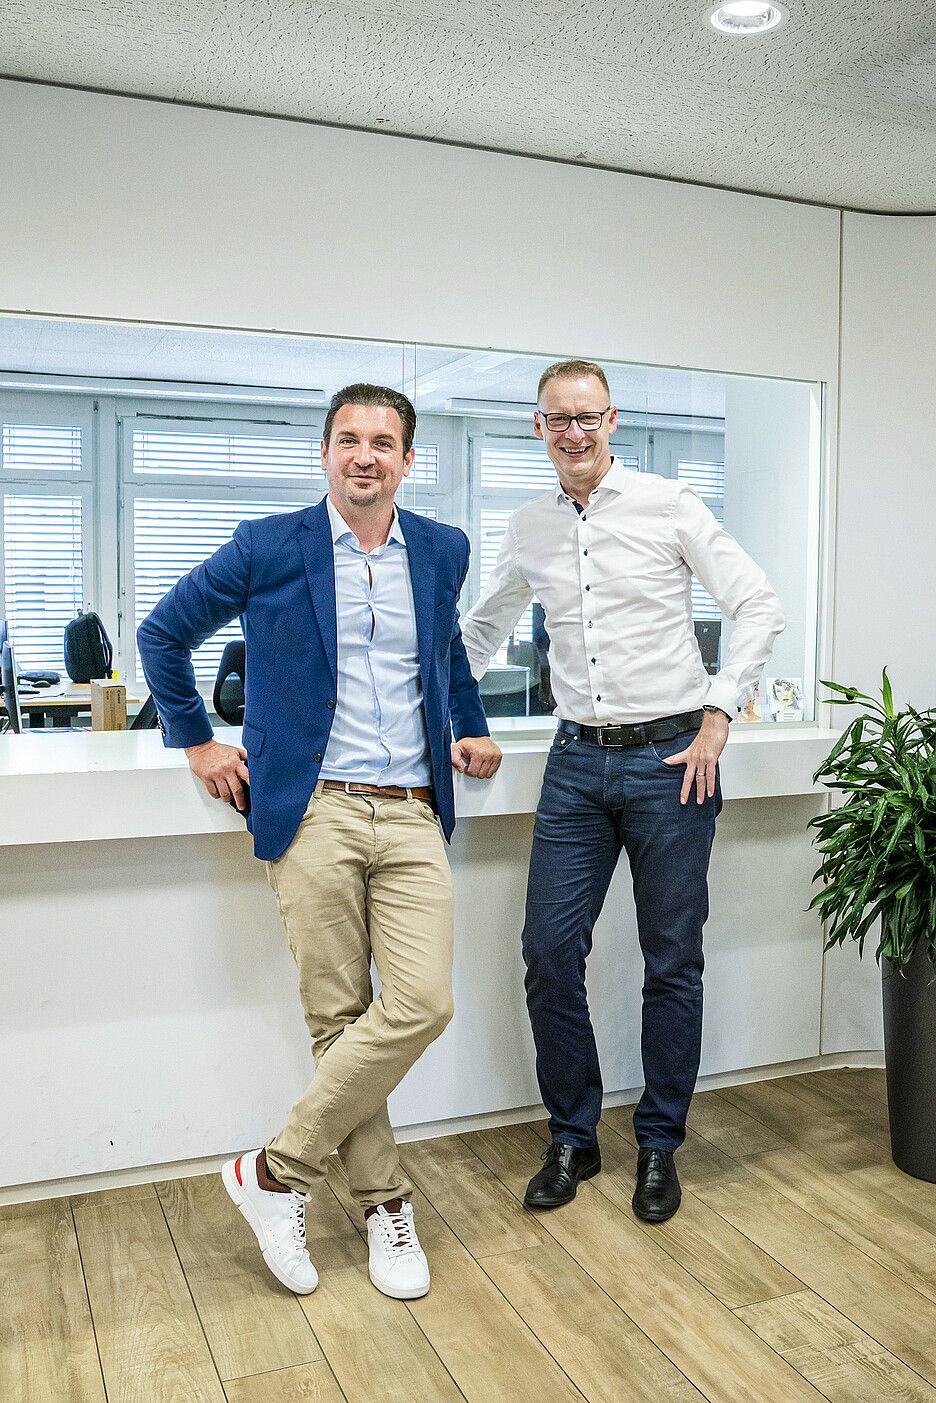 Freuen sich über die Zusammenarbeit: Daniel Nussbaumer (links), Executive Director der Vantage Education Group, und Christoph Kuhn, Country Manager Schweiz der Cafina AG.